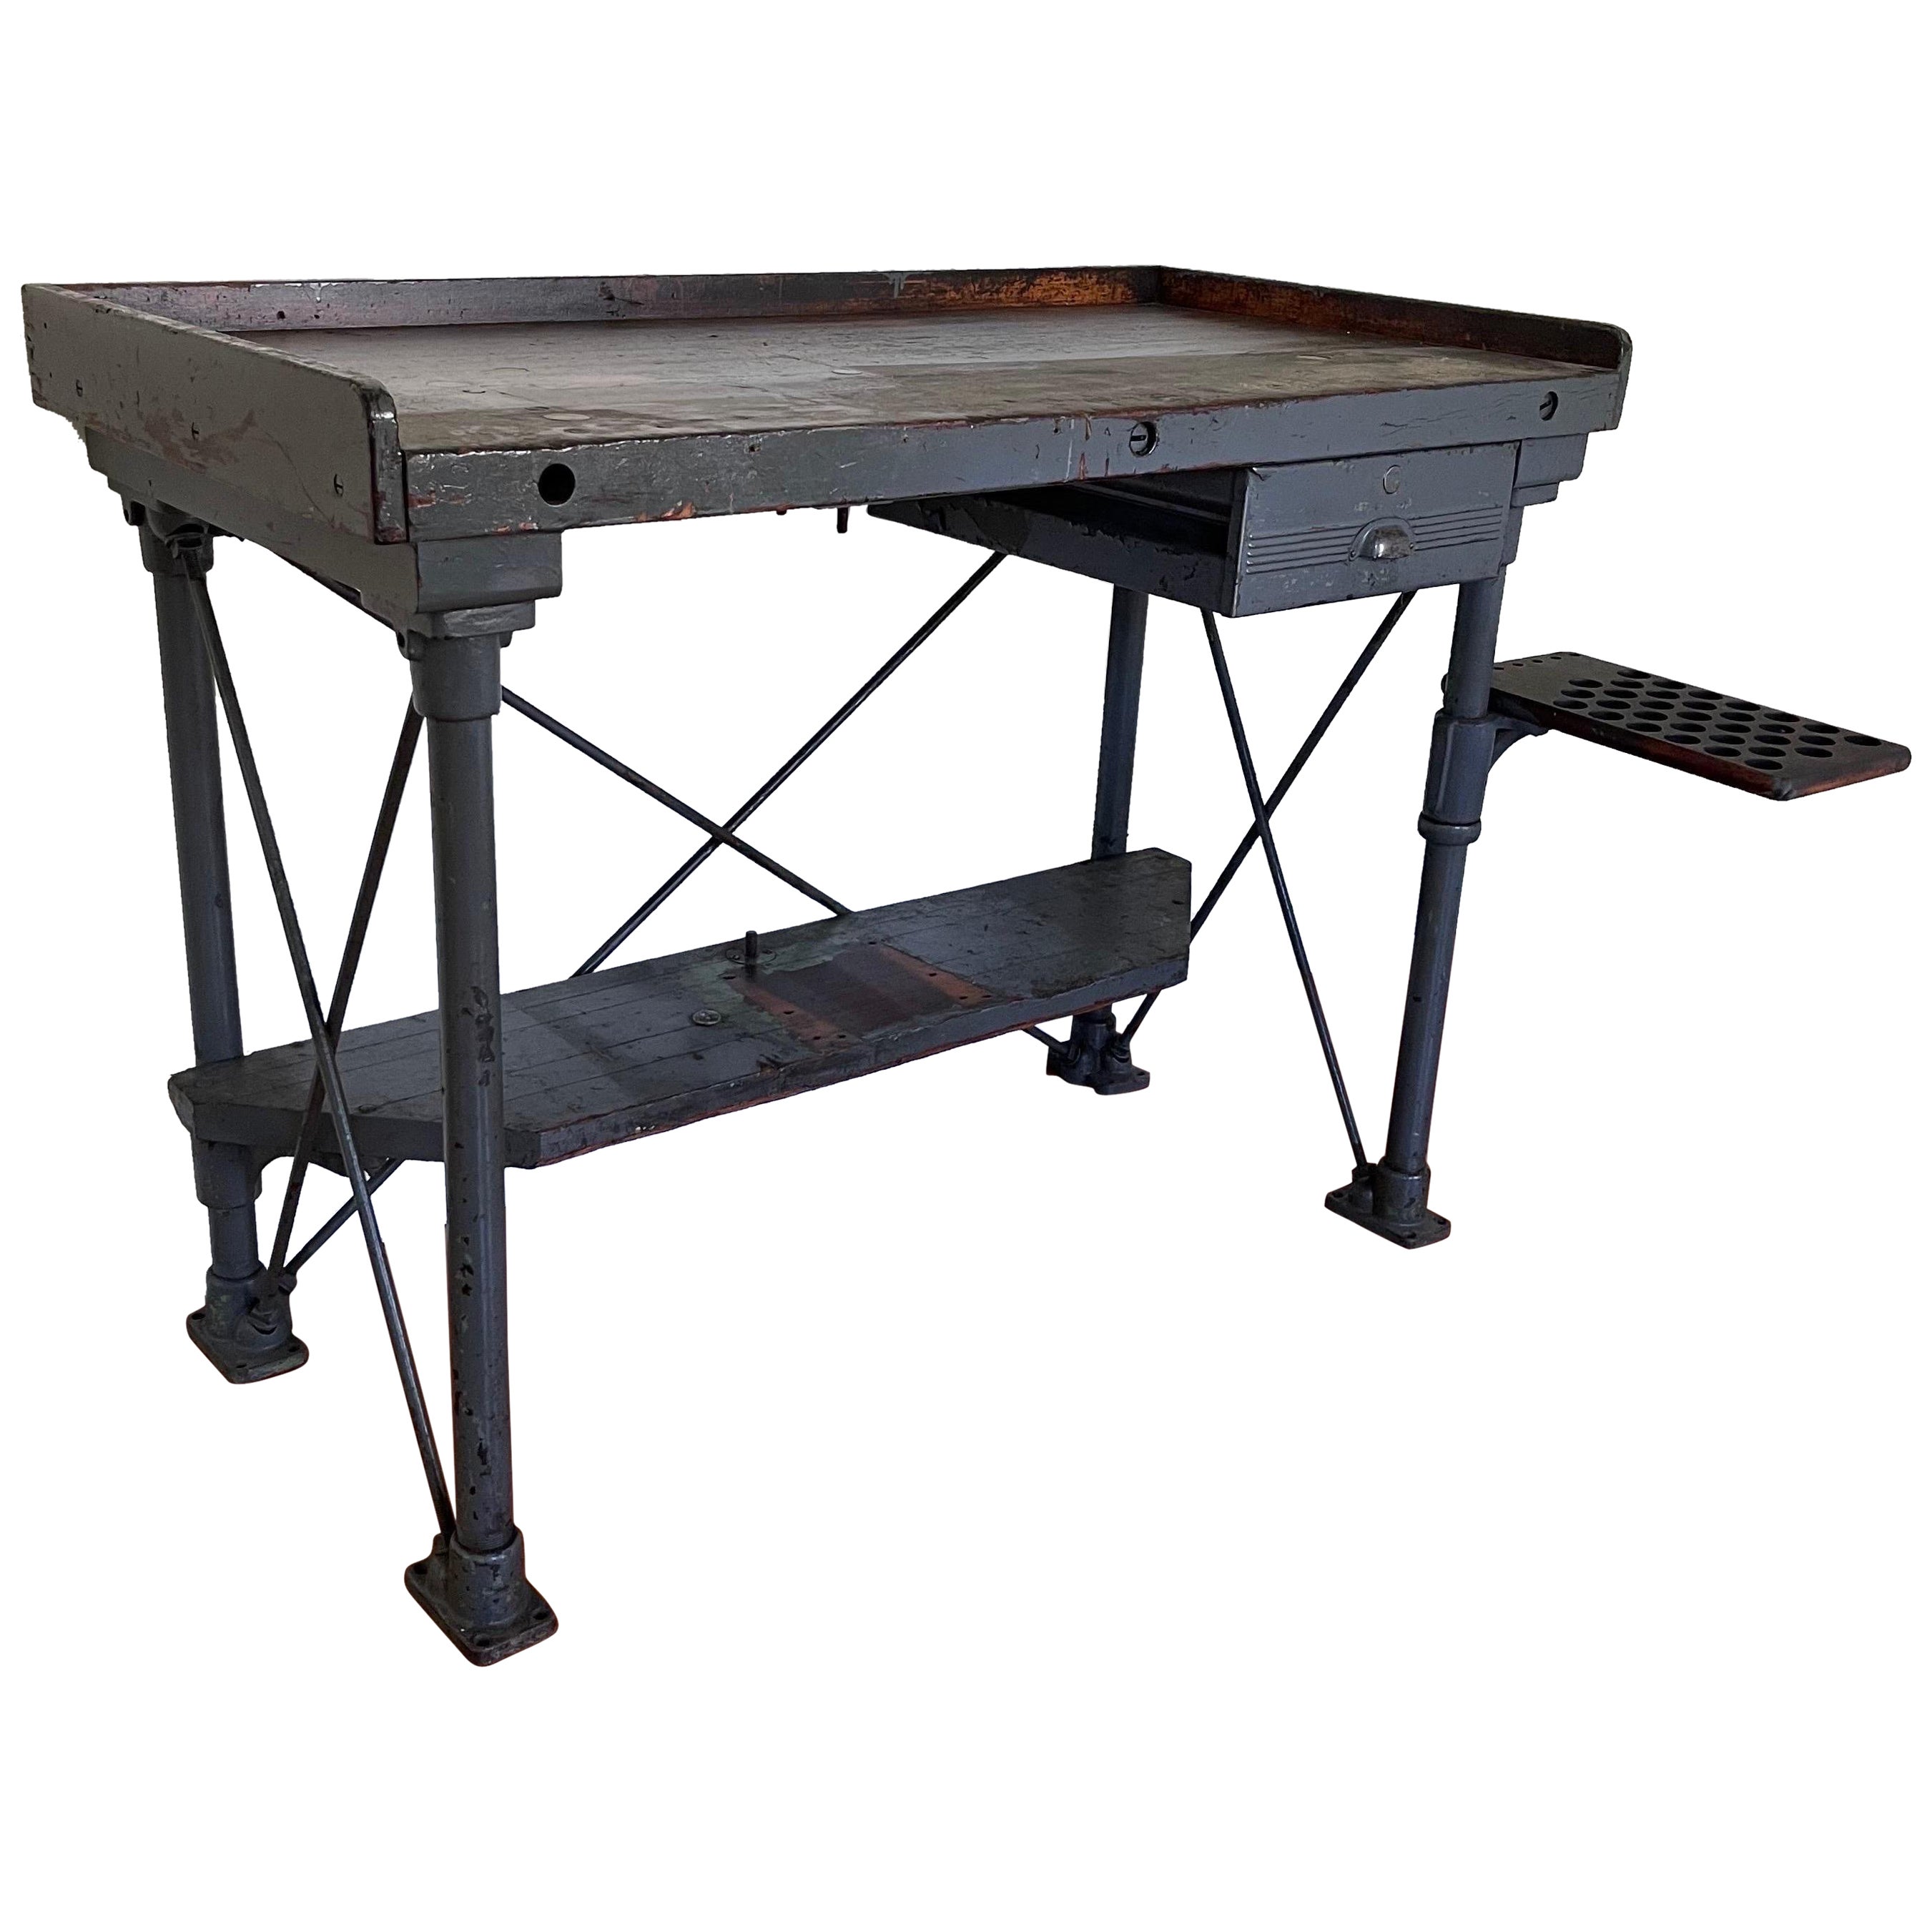 .Early 20th Century Heavy Industrial Workbench Desk